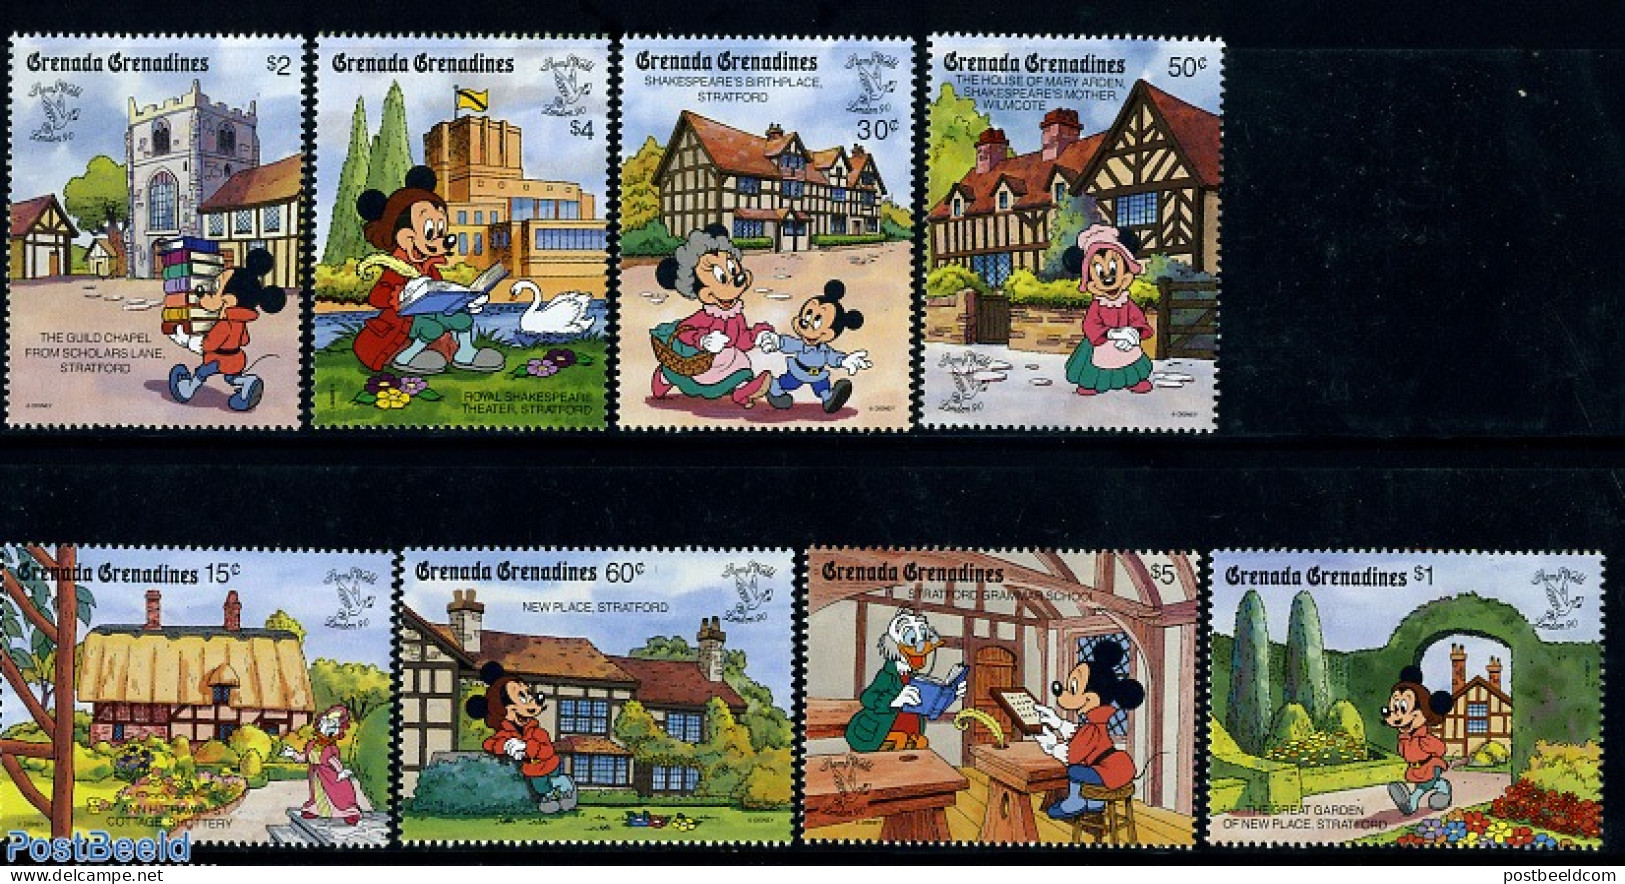 Grenada Grenadines 1990 Stamp World, Disney 8v, Mint NH, Art - Disney - Disney